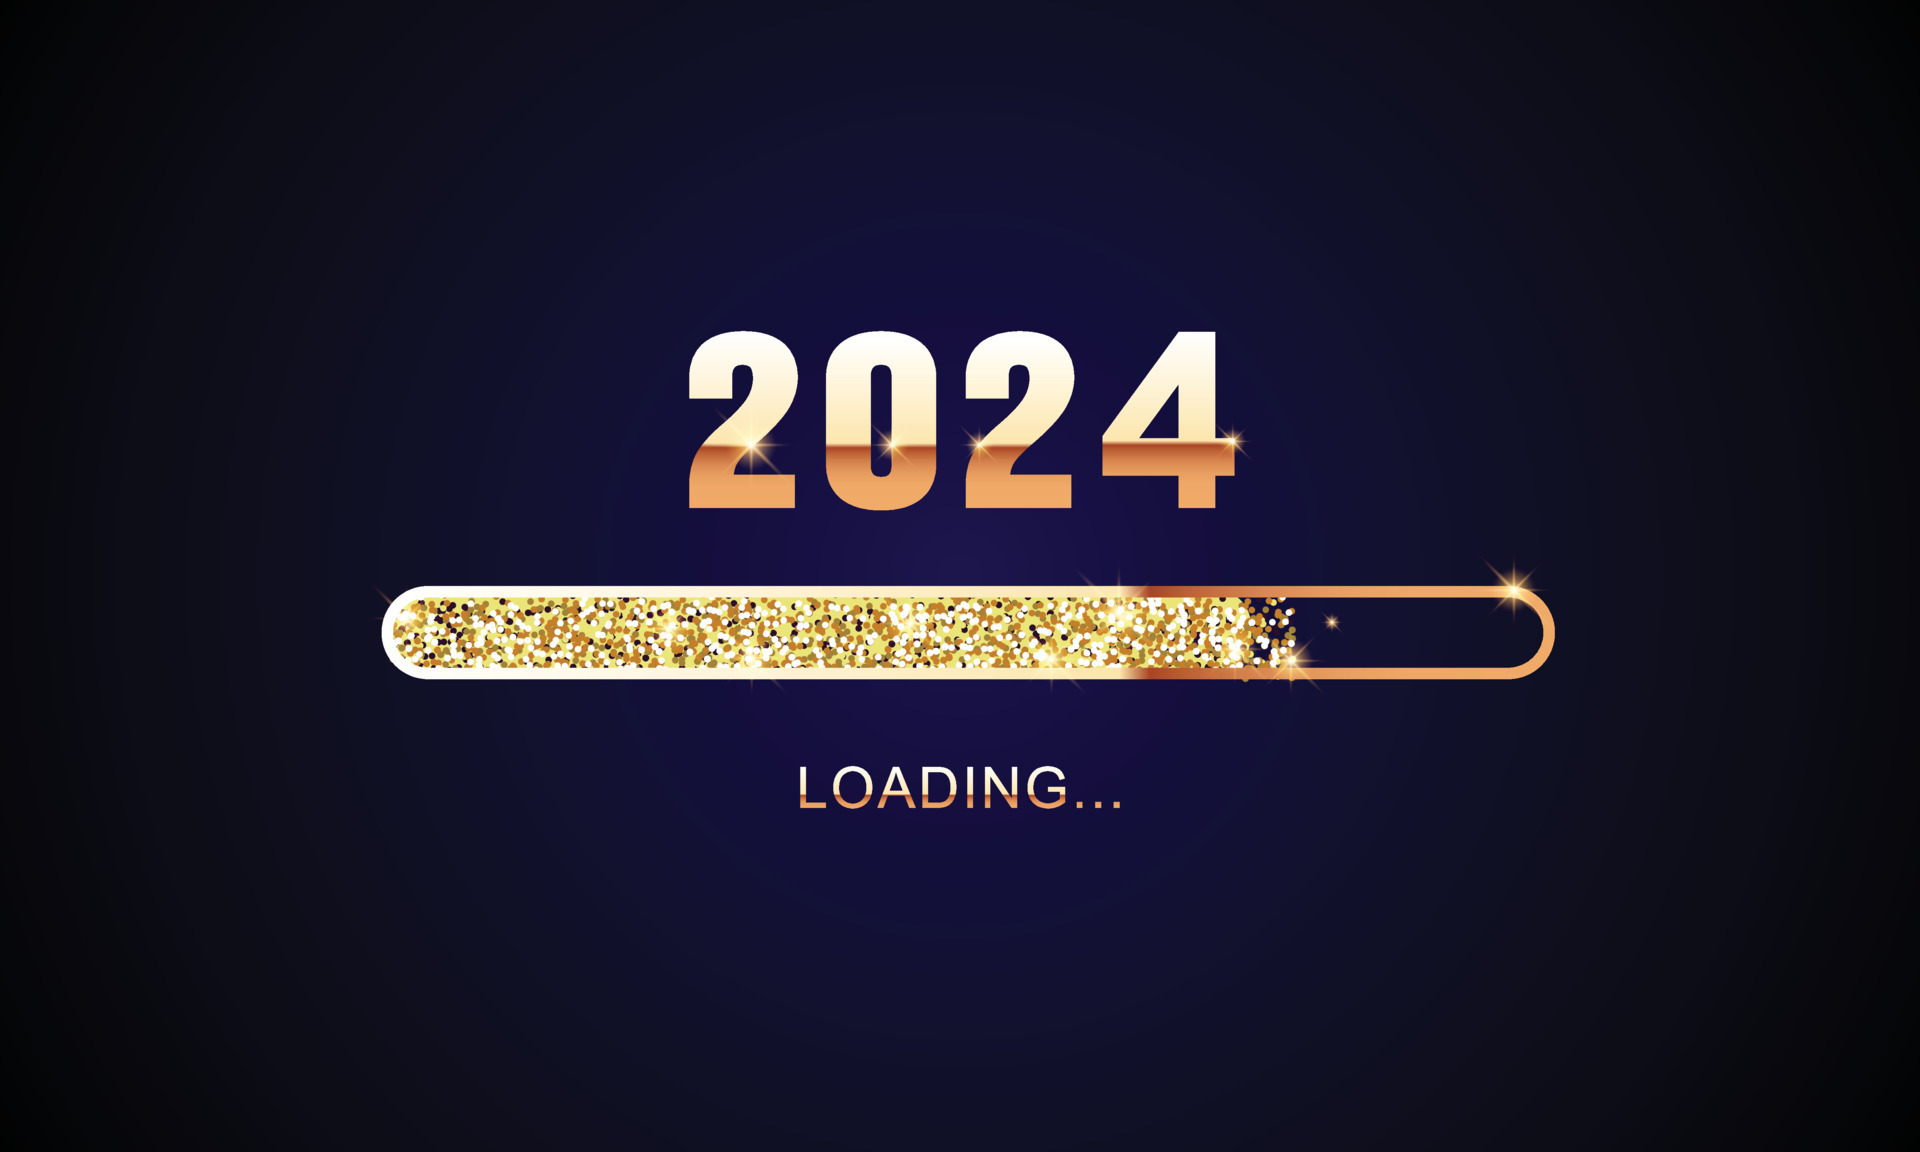 عد تنازلي لسنة 2024 .. العد التنازلي للسنة الميلادية الجديدة 2024